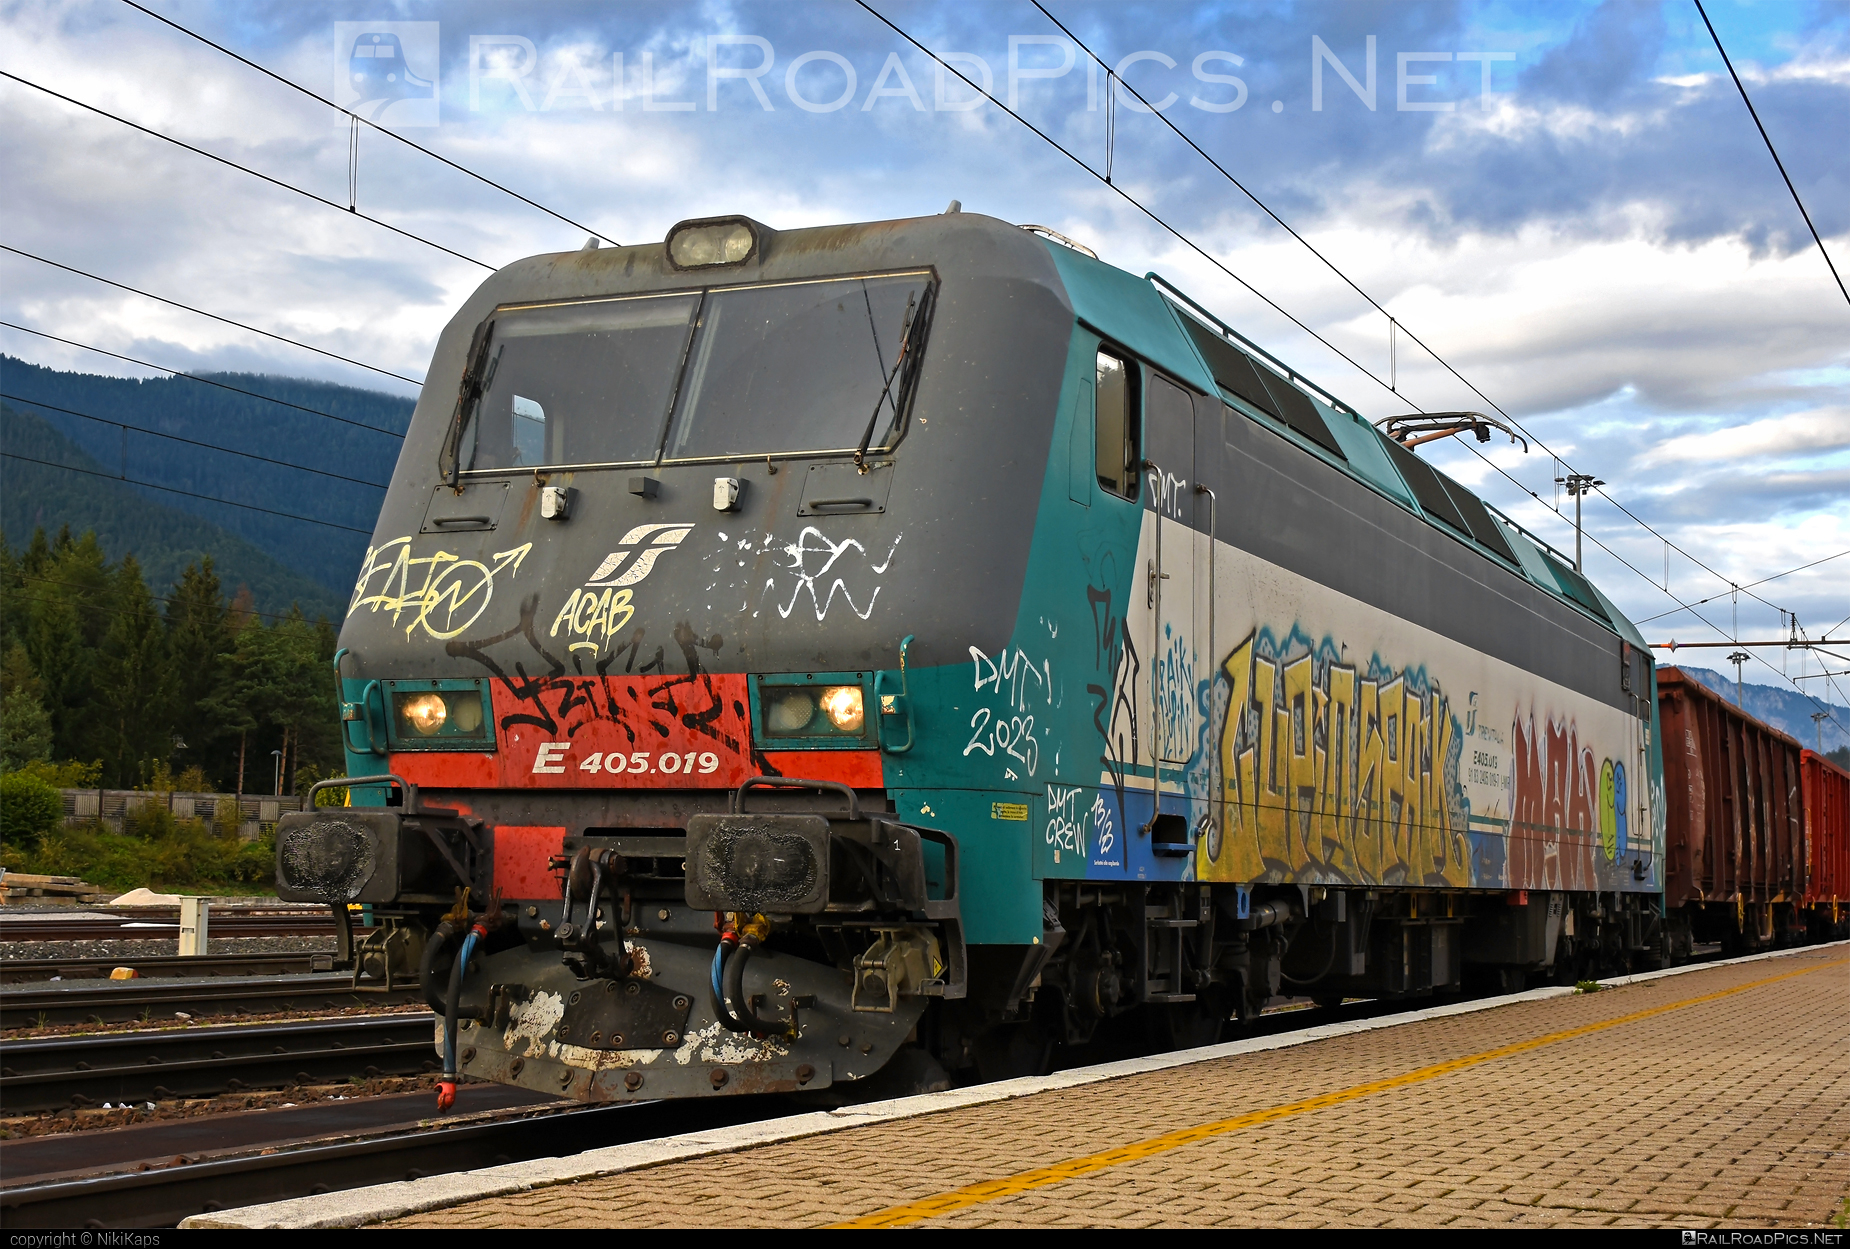 Bombardier Class E.405 - E405.019 operated by Mercitalia Rail S.r.l. #bombardier #bombardierE405 #ferroviedellostato #fs #fsClassE405 #fsitaliane #graffiti #mercitalia #openwagon